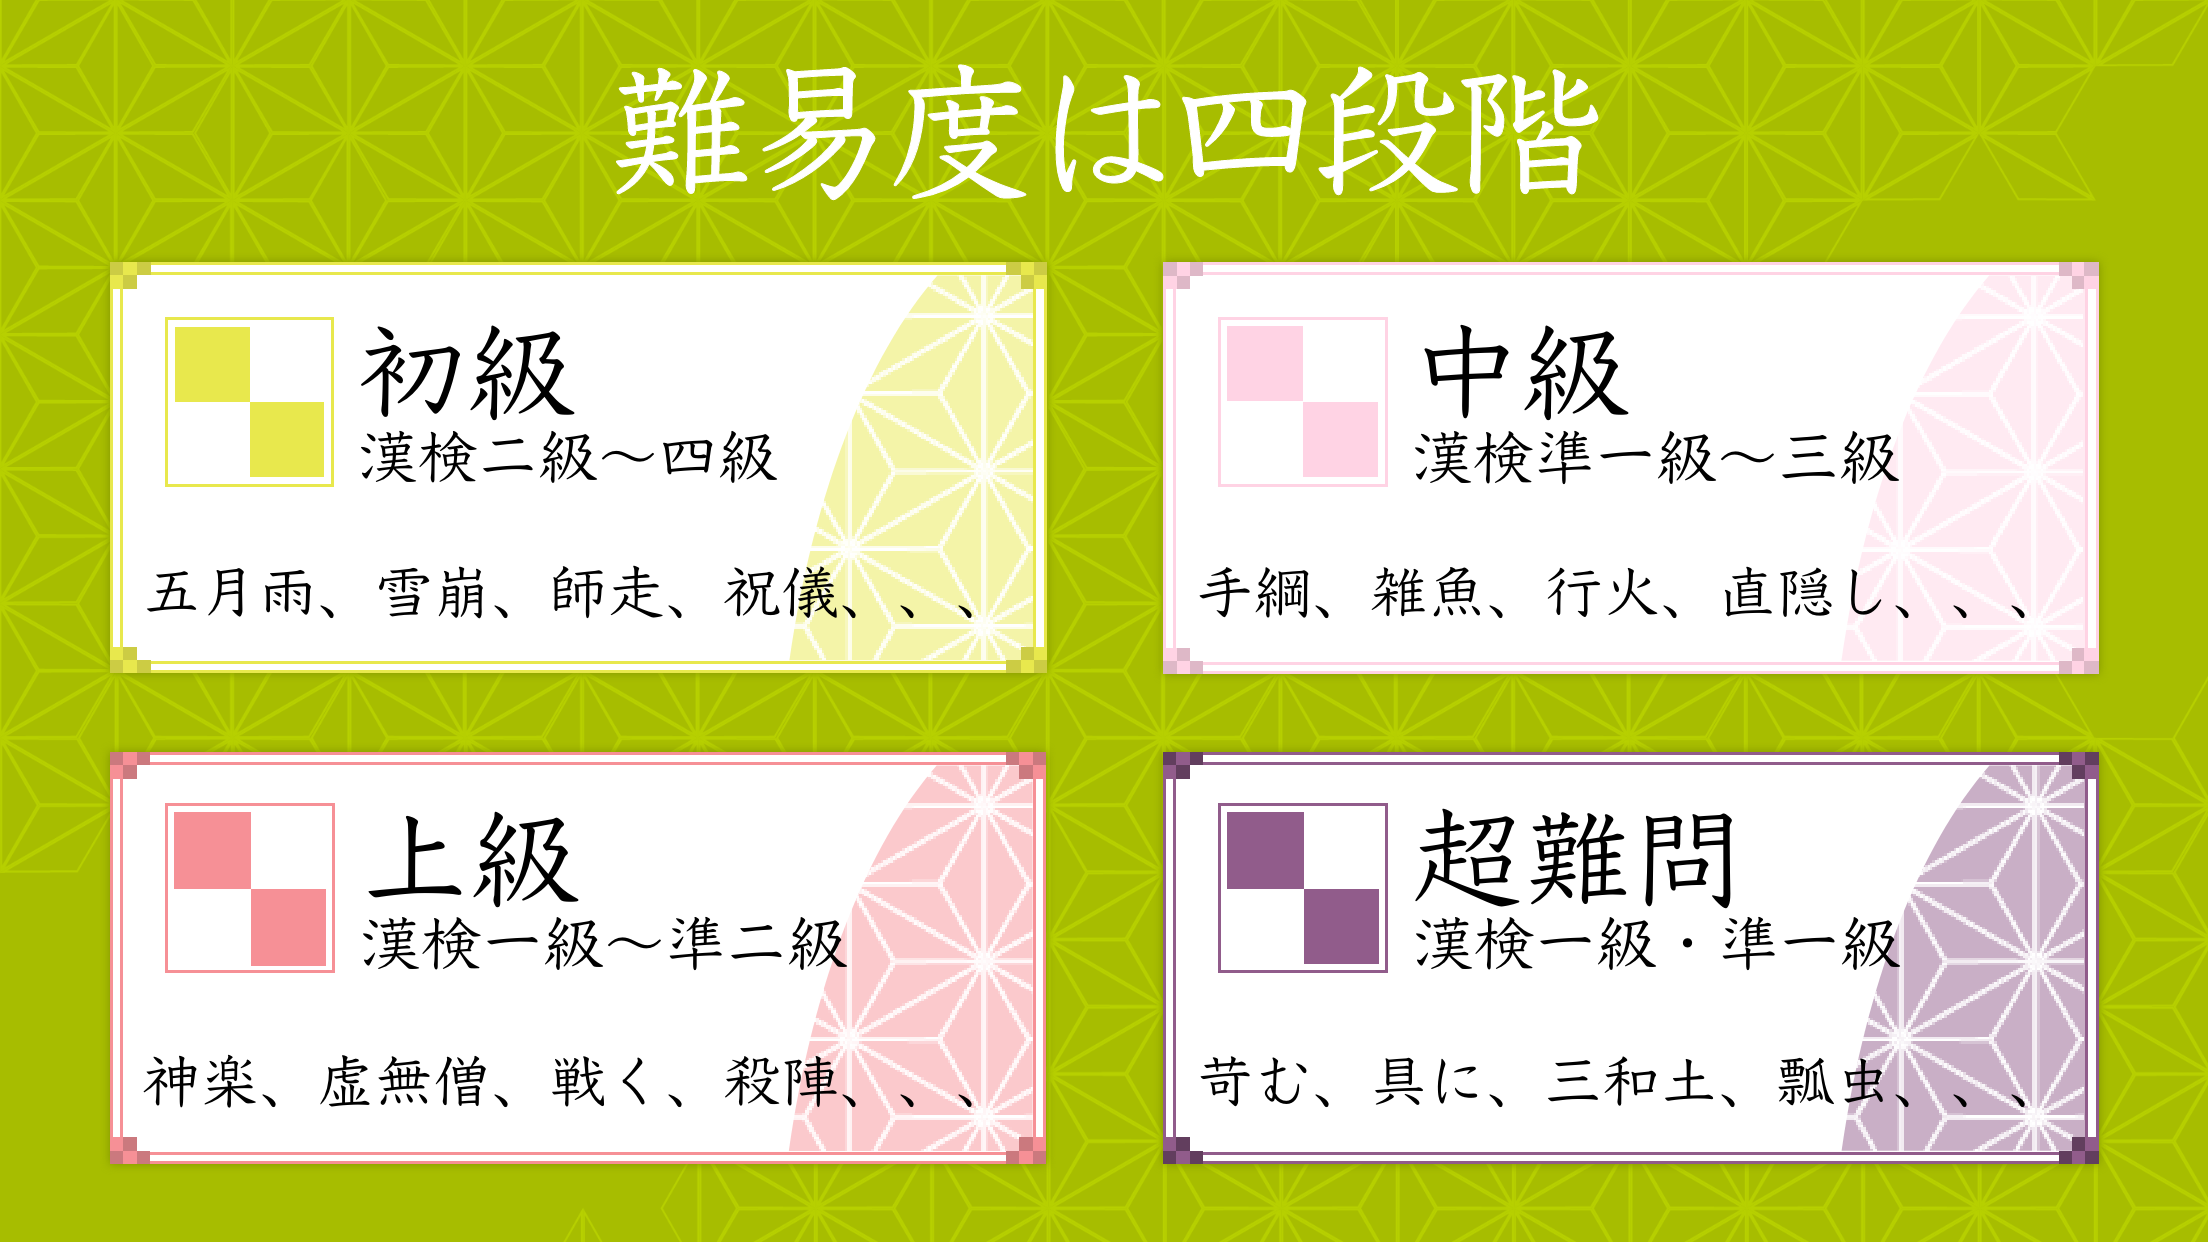 漢字読みクロスワード 無料で漢検クイズ 漢字の読み方アプリ Download Game Taptap